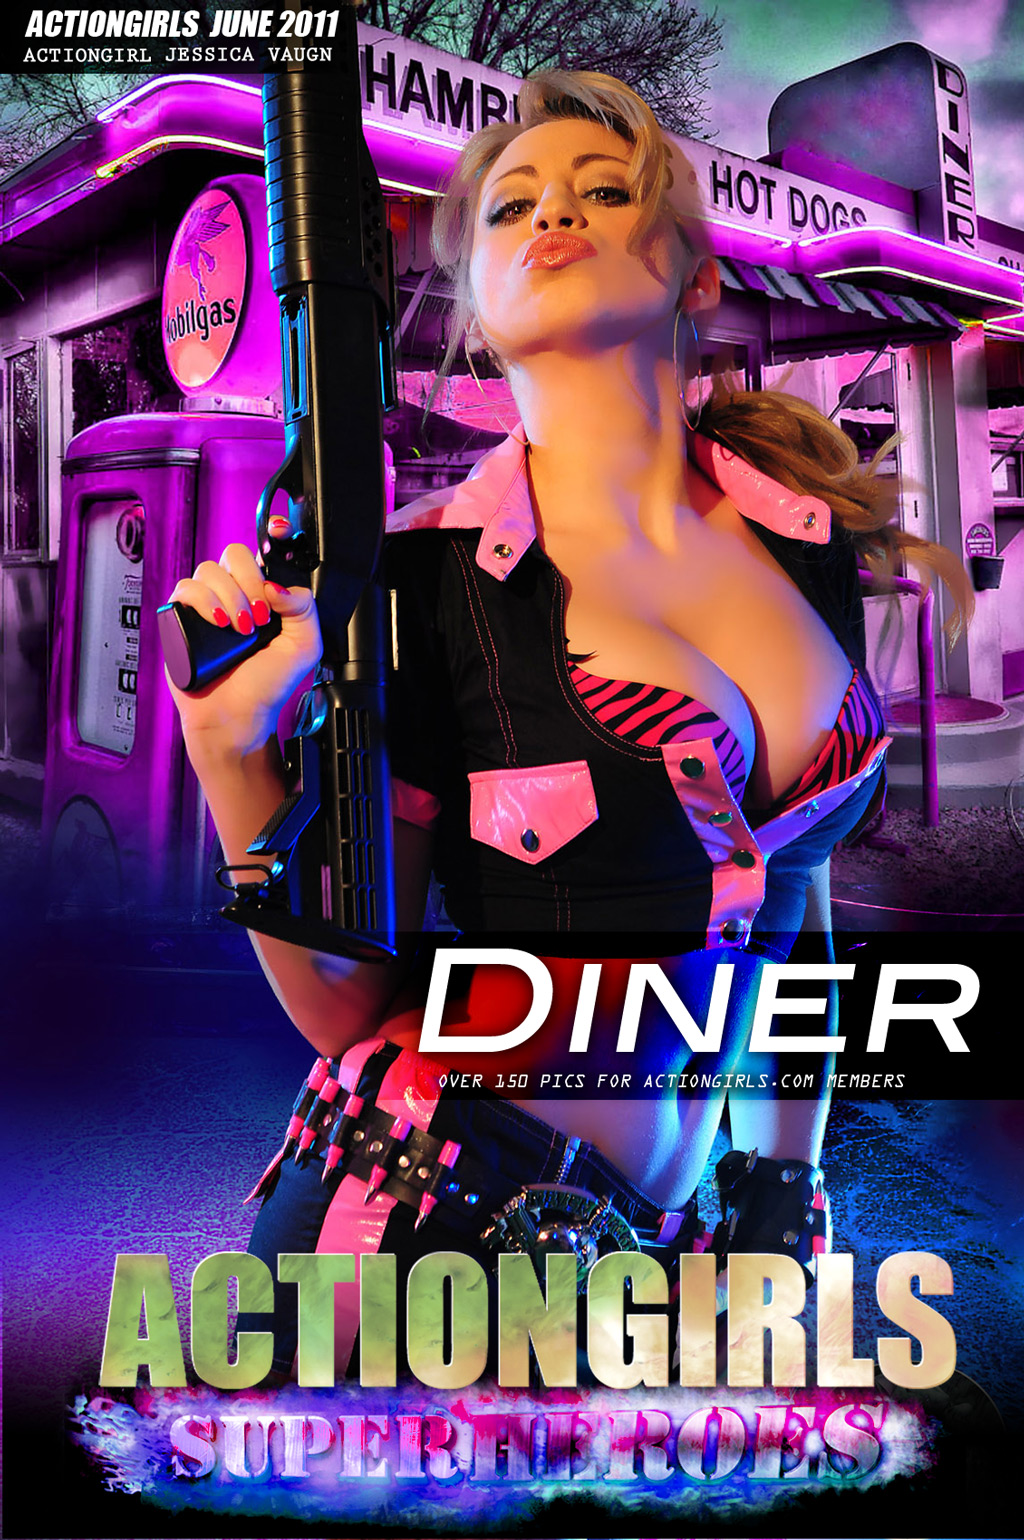 Jessica: Diner